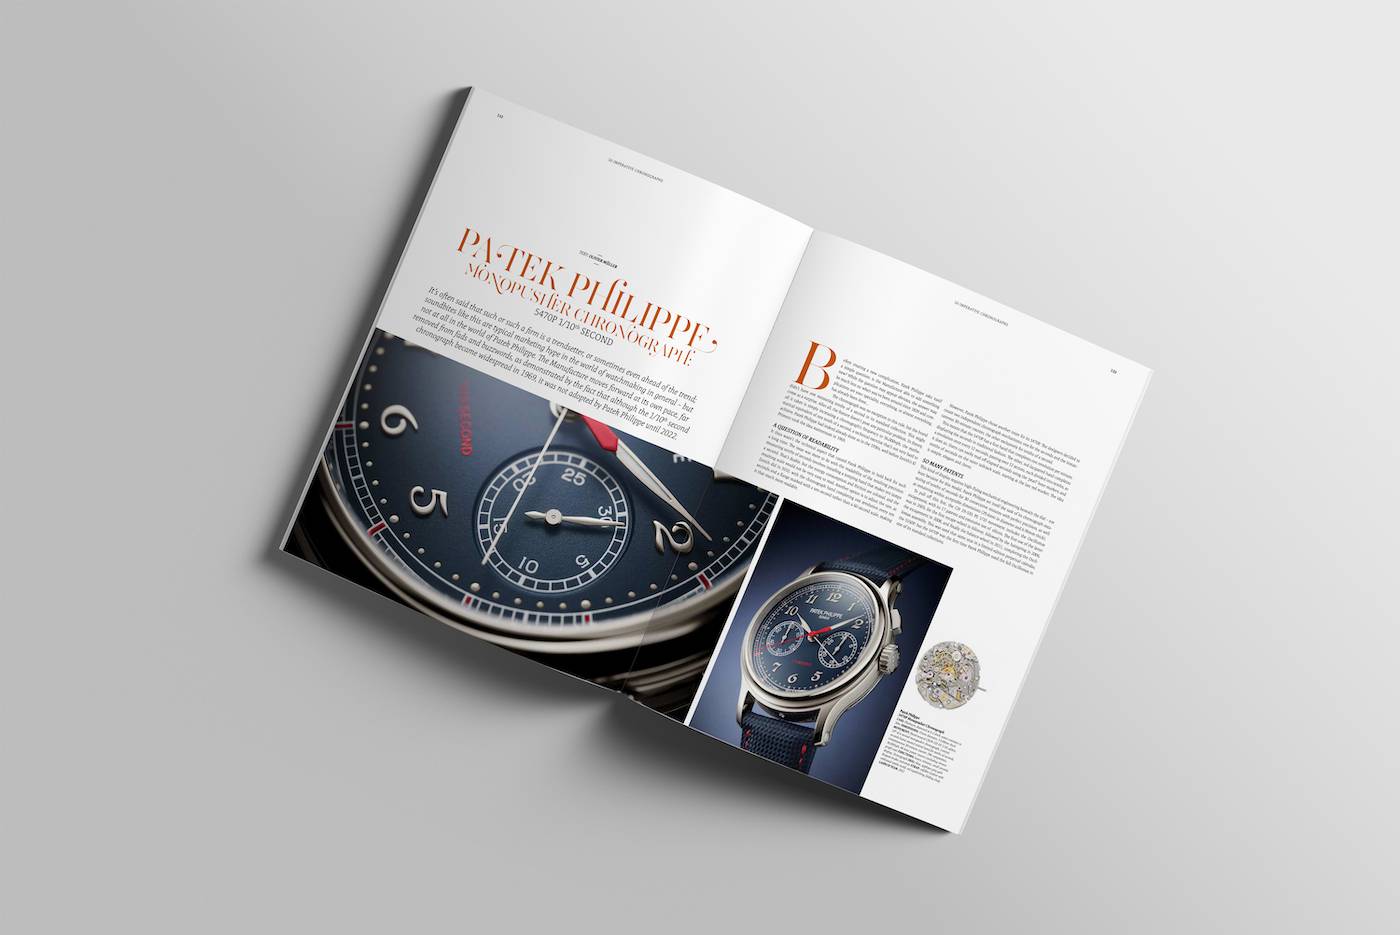 The Millennium Watch Book: Cronógrafos listos para su lanzamiento en Noviembre